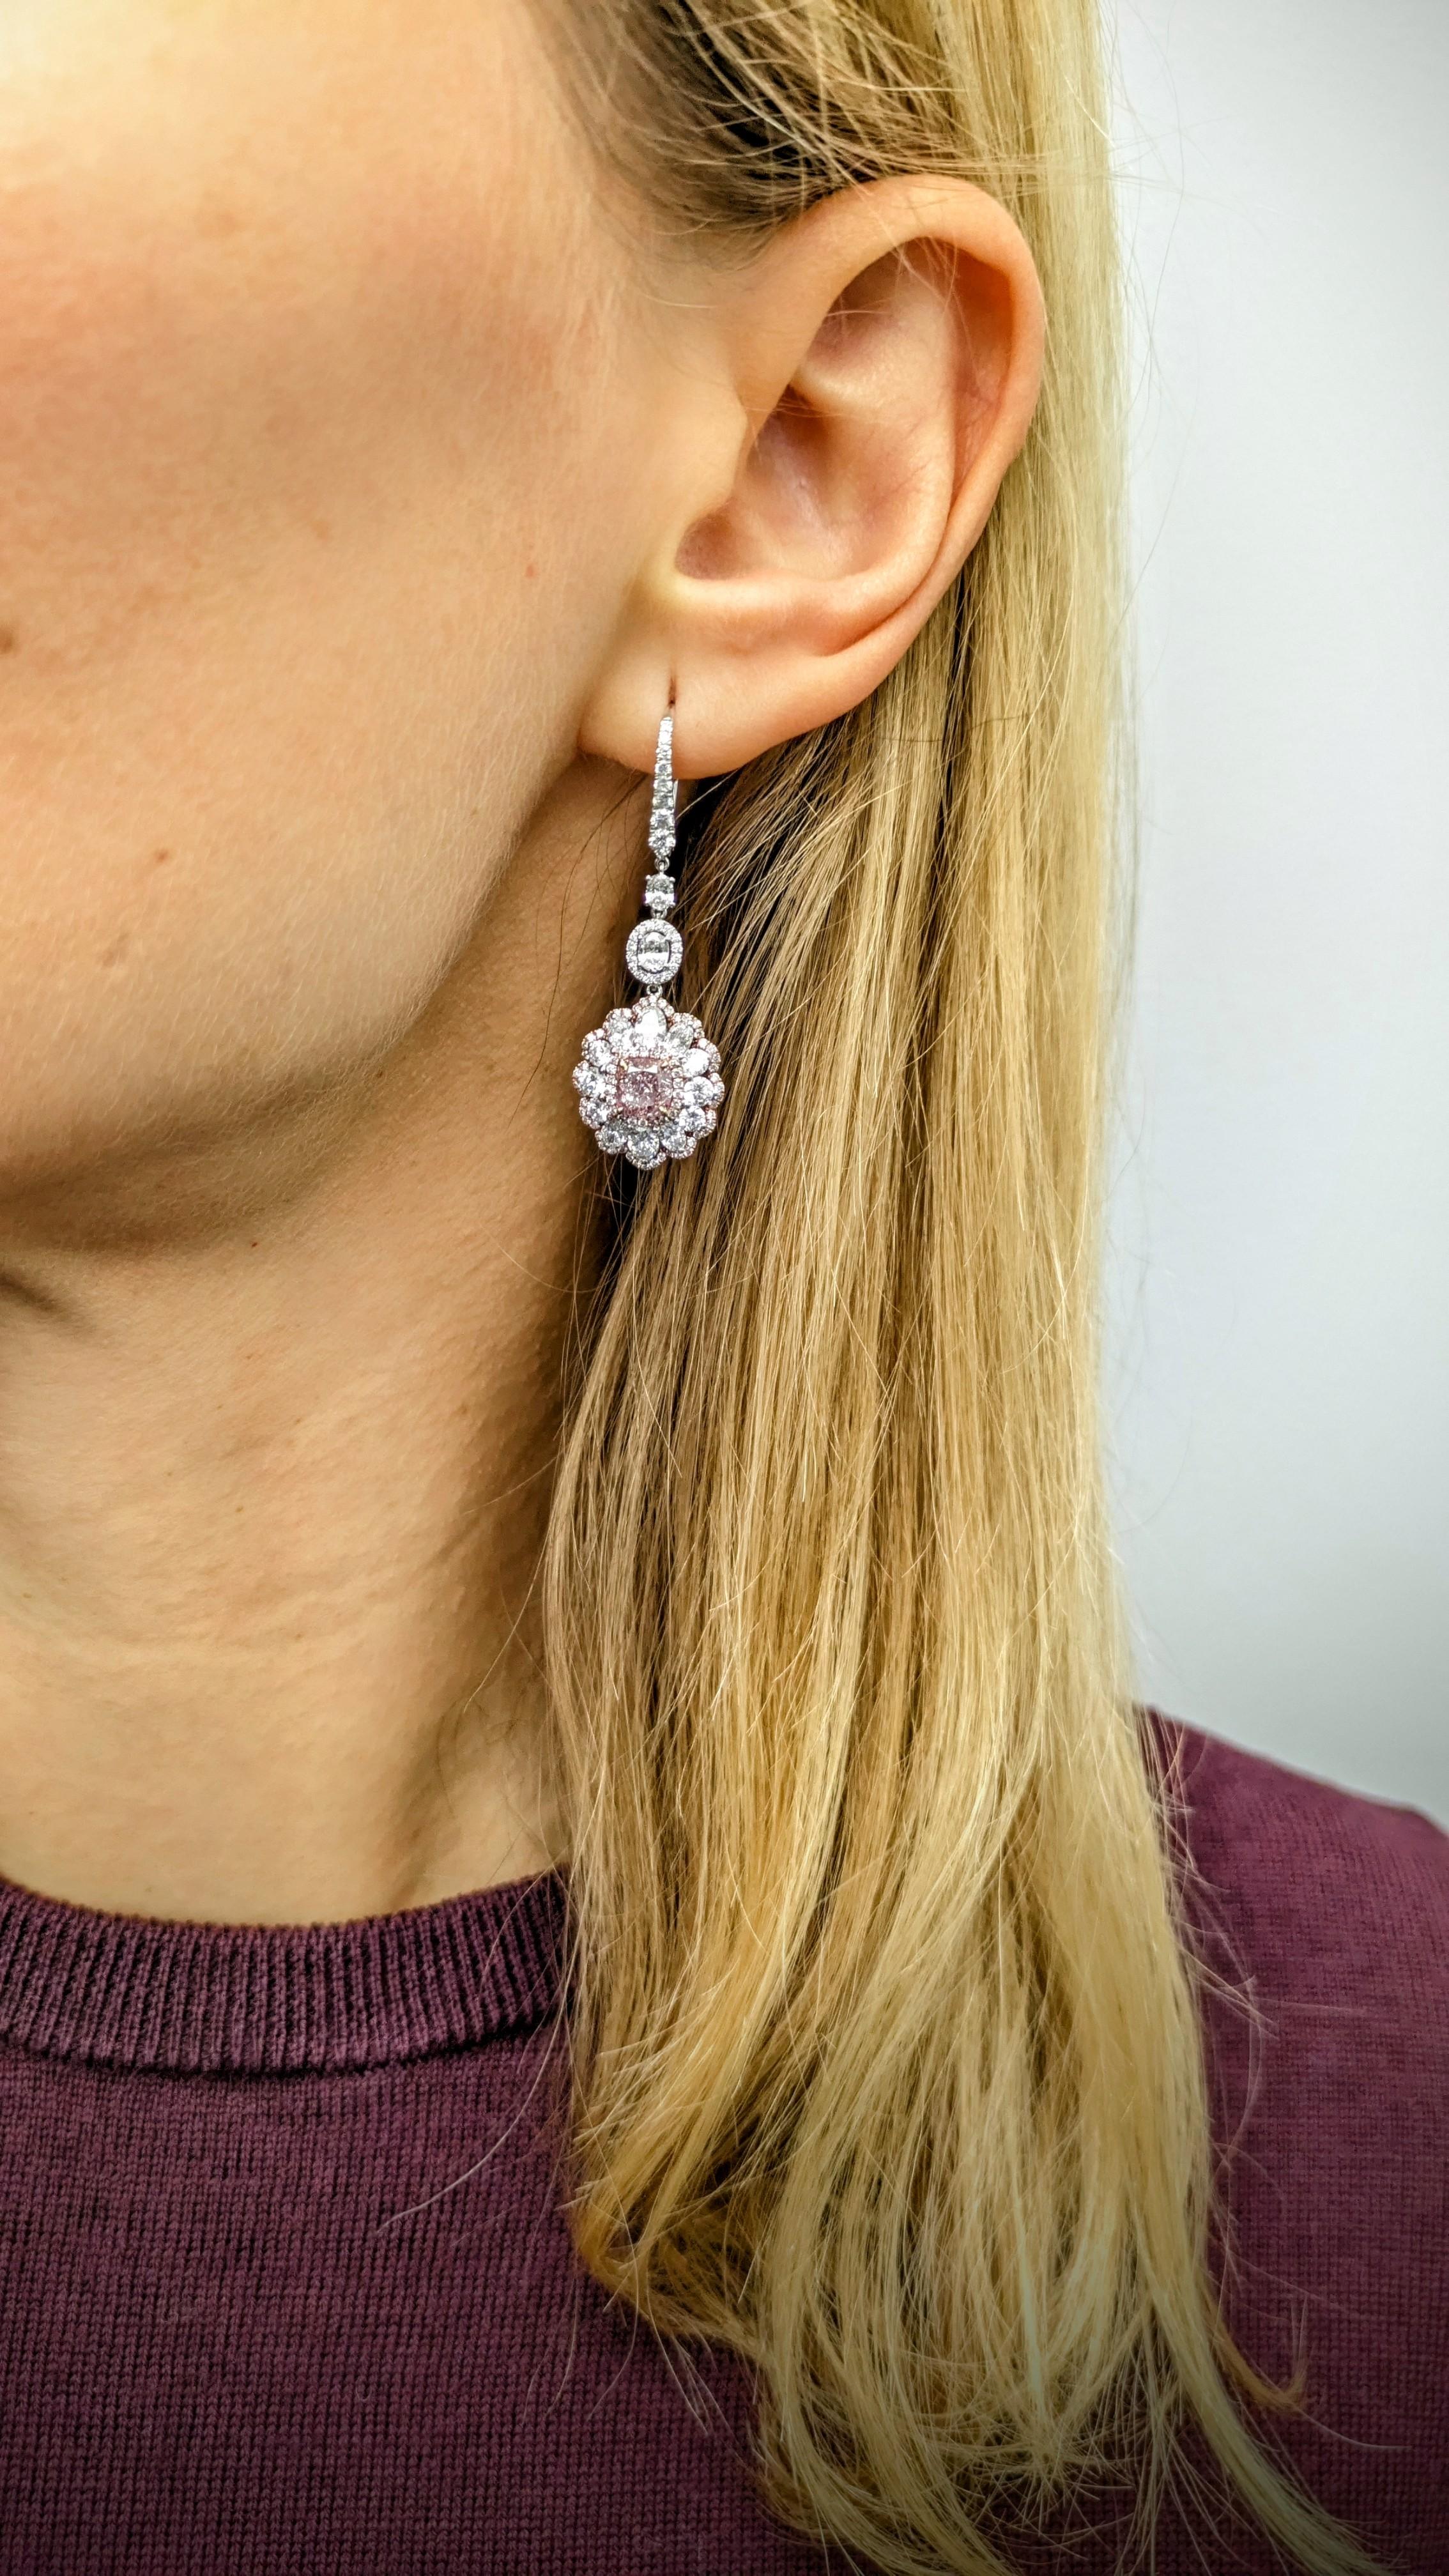 Certified 1 carat very light pink & white diamond Drop earrings in 18K Gold